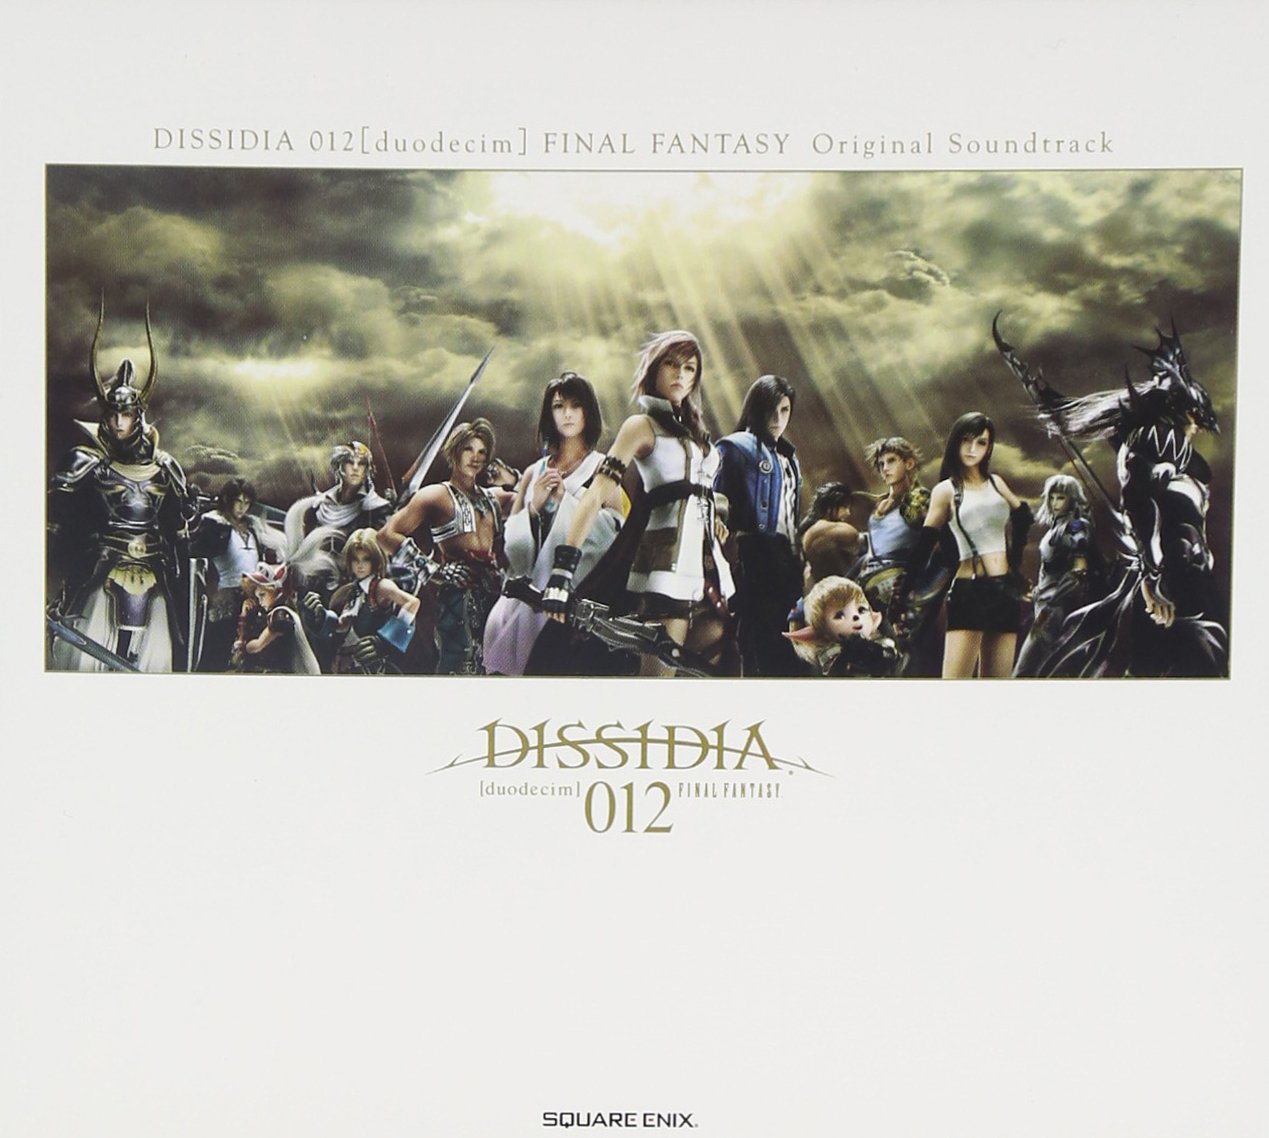 Audio Cd Dissidia 012[Deodecim] Original Soundtrack / Game Music / Various (3 Cd) NUOVO SIGILLATO, EDIZIONE DEL 02/03/2011 SUBITO DISPONIBILE